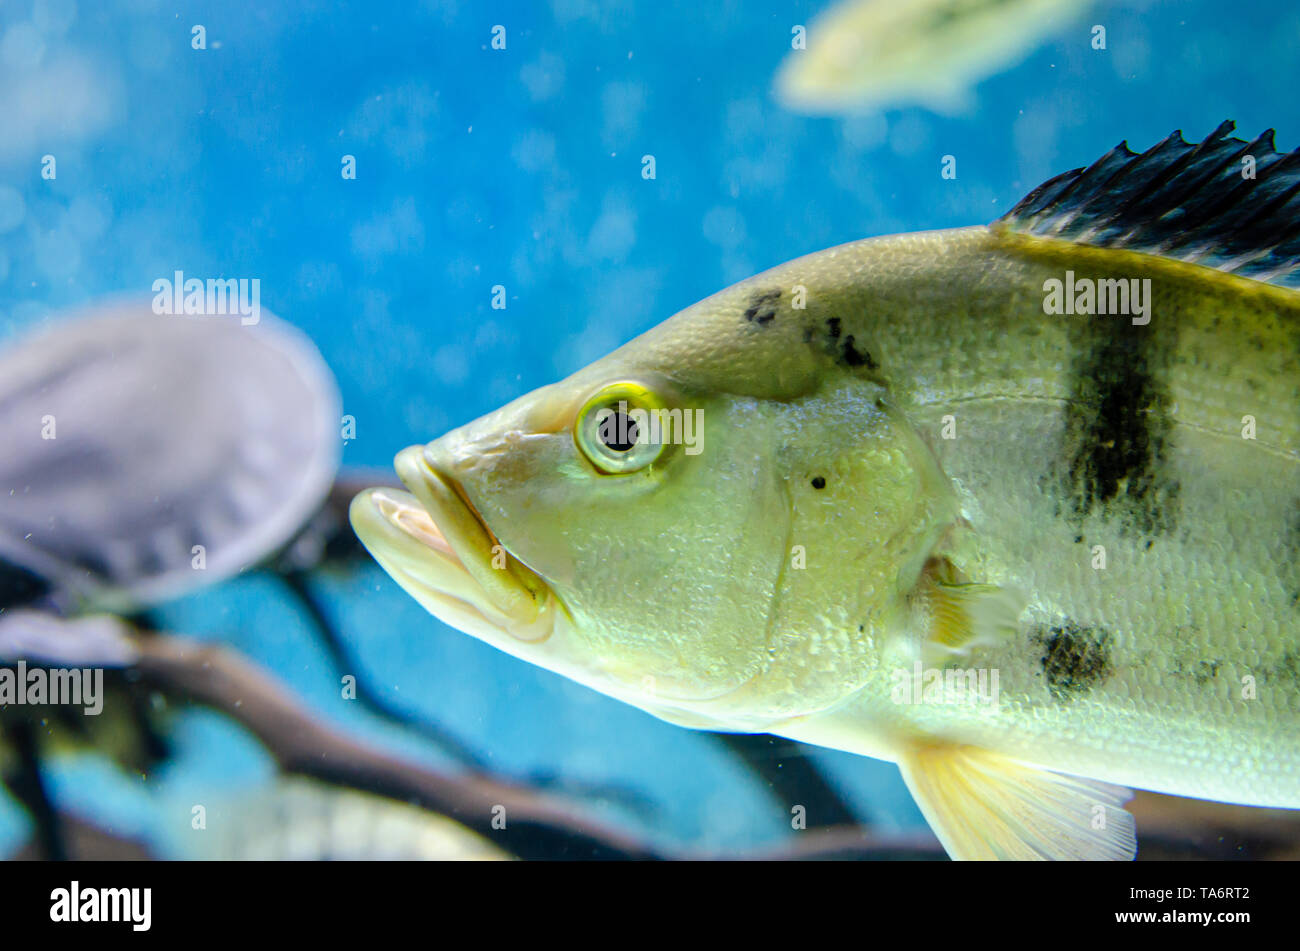 fish cichla monoculus in the aquarium Stock Photo